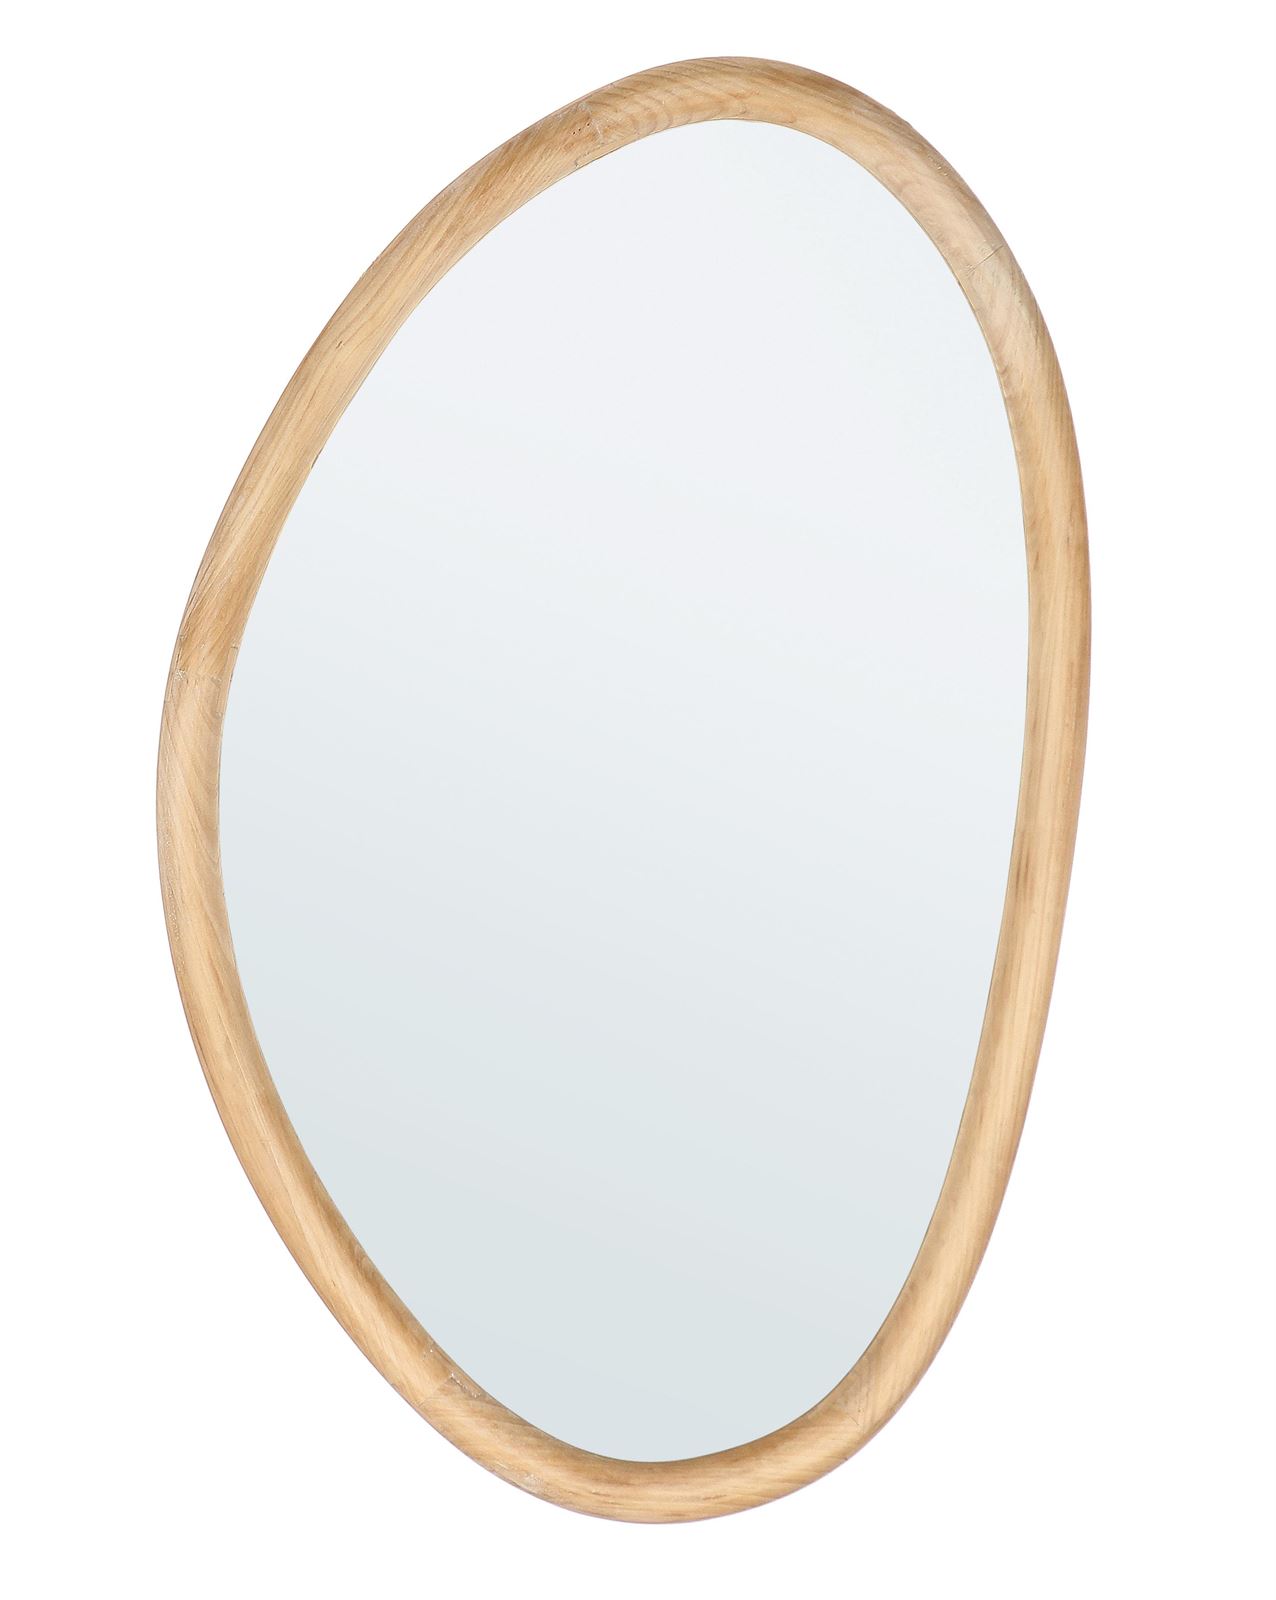 Espejo madera natural Ovalado - Imagen 1